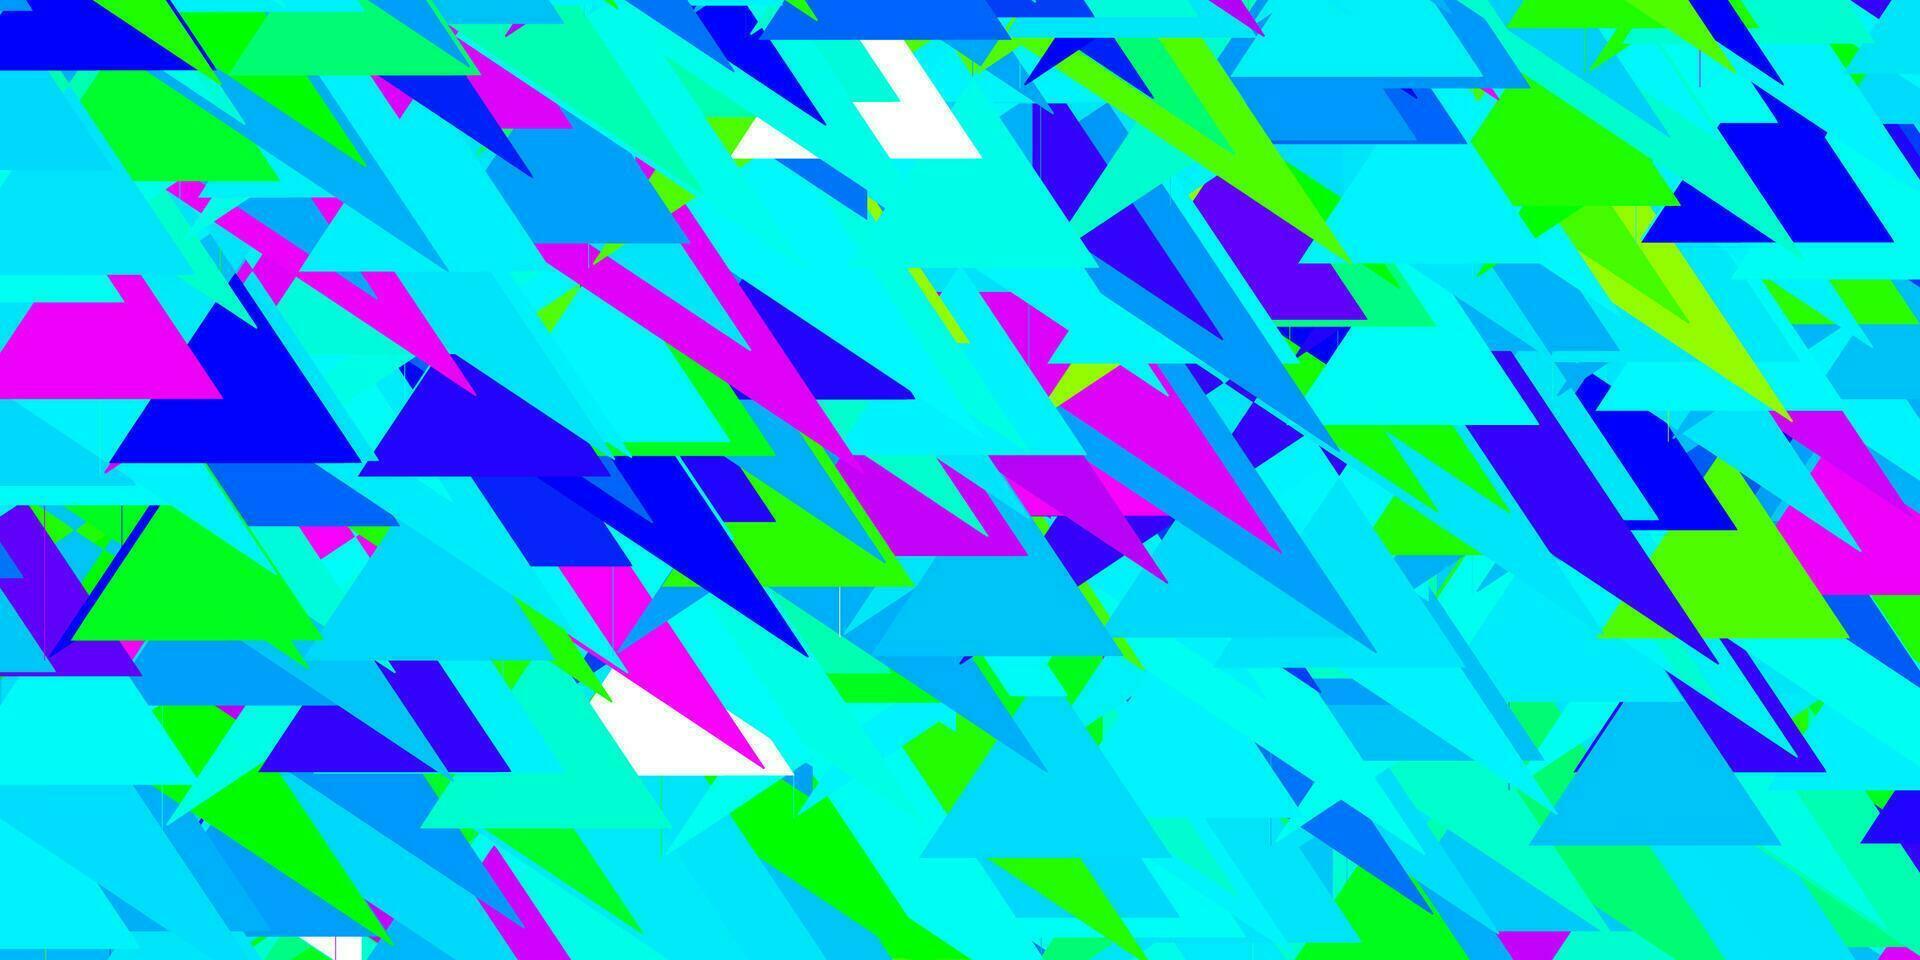 fundo vector azul e verde claro com triângulos.